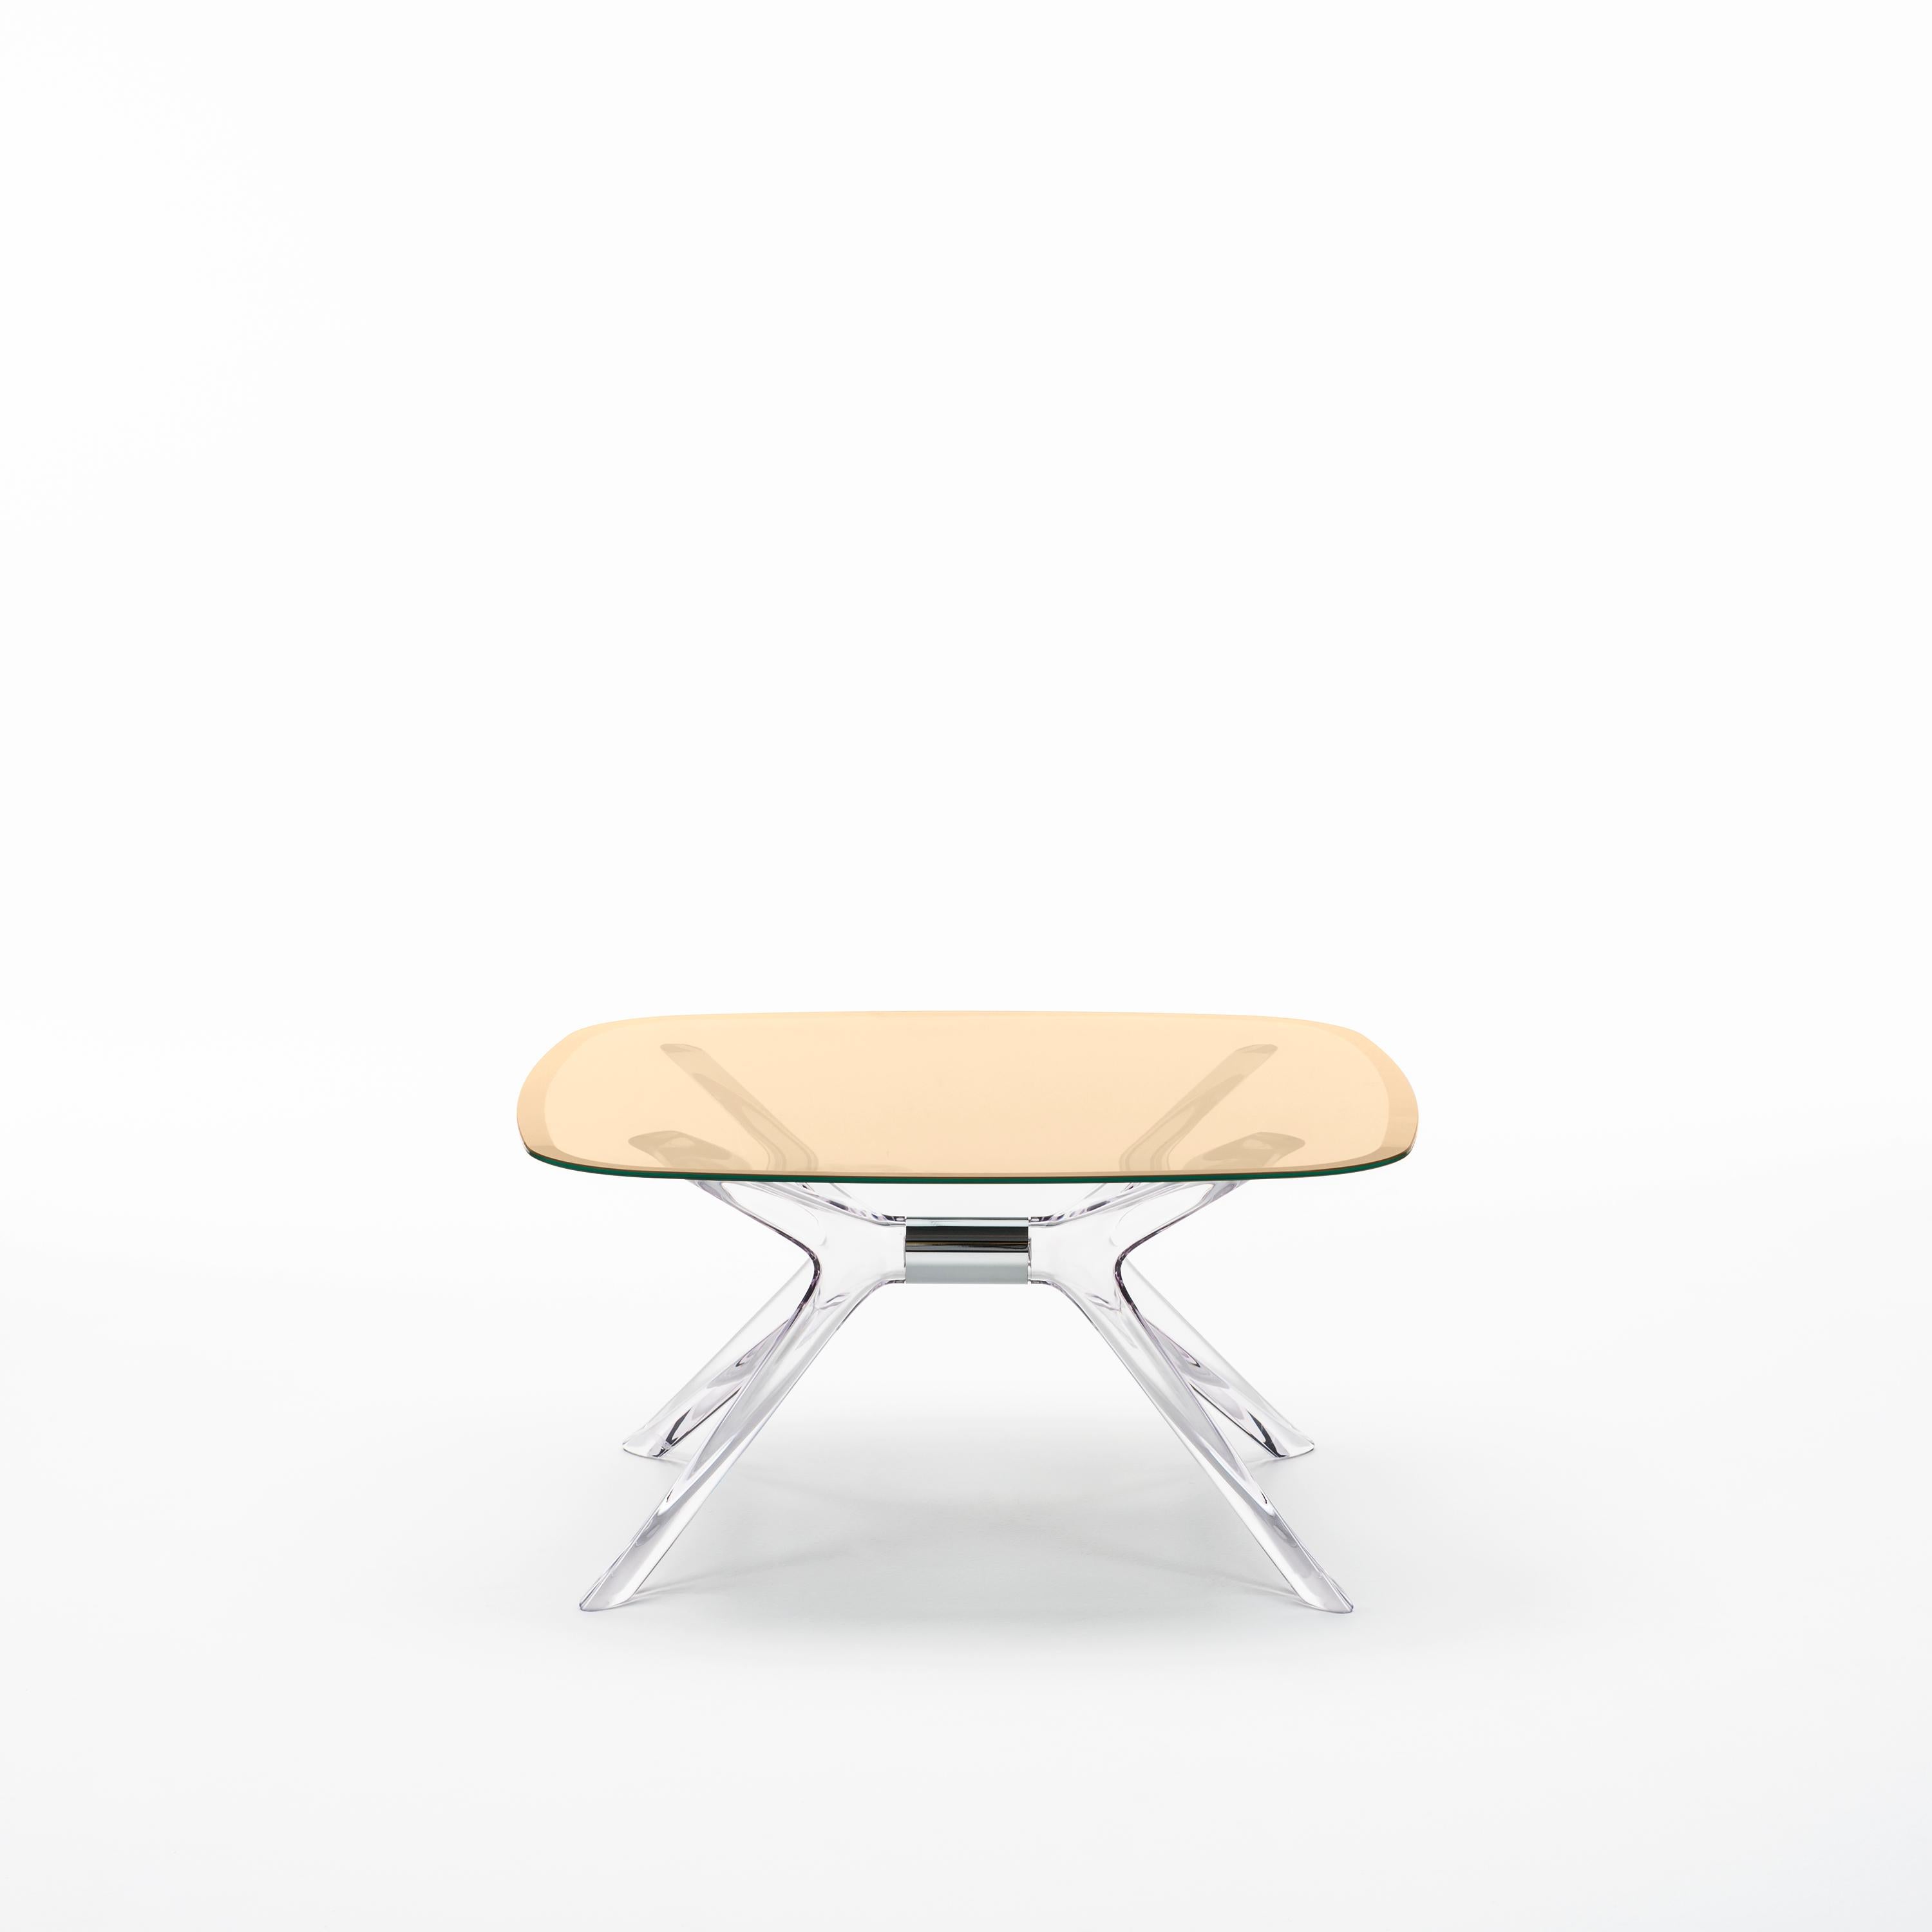 Kartell lifestyle enrichit le salon avec Blast de Philippe Starck, une table basse carrée aux angles arrondis et aux bases et plateaux transparents. Le design est une évolution de la table Sir Gio. Le noyau central de la base est